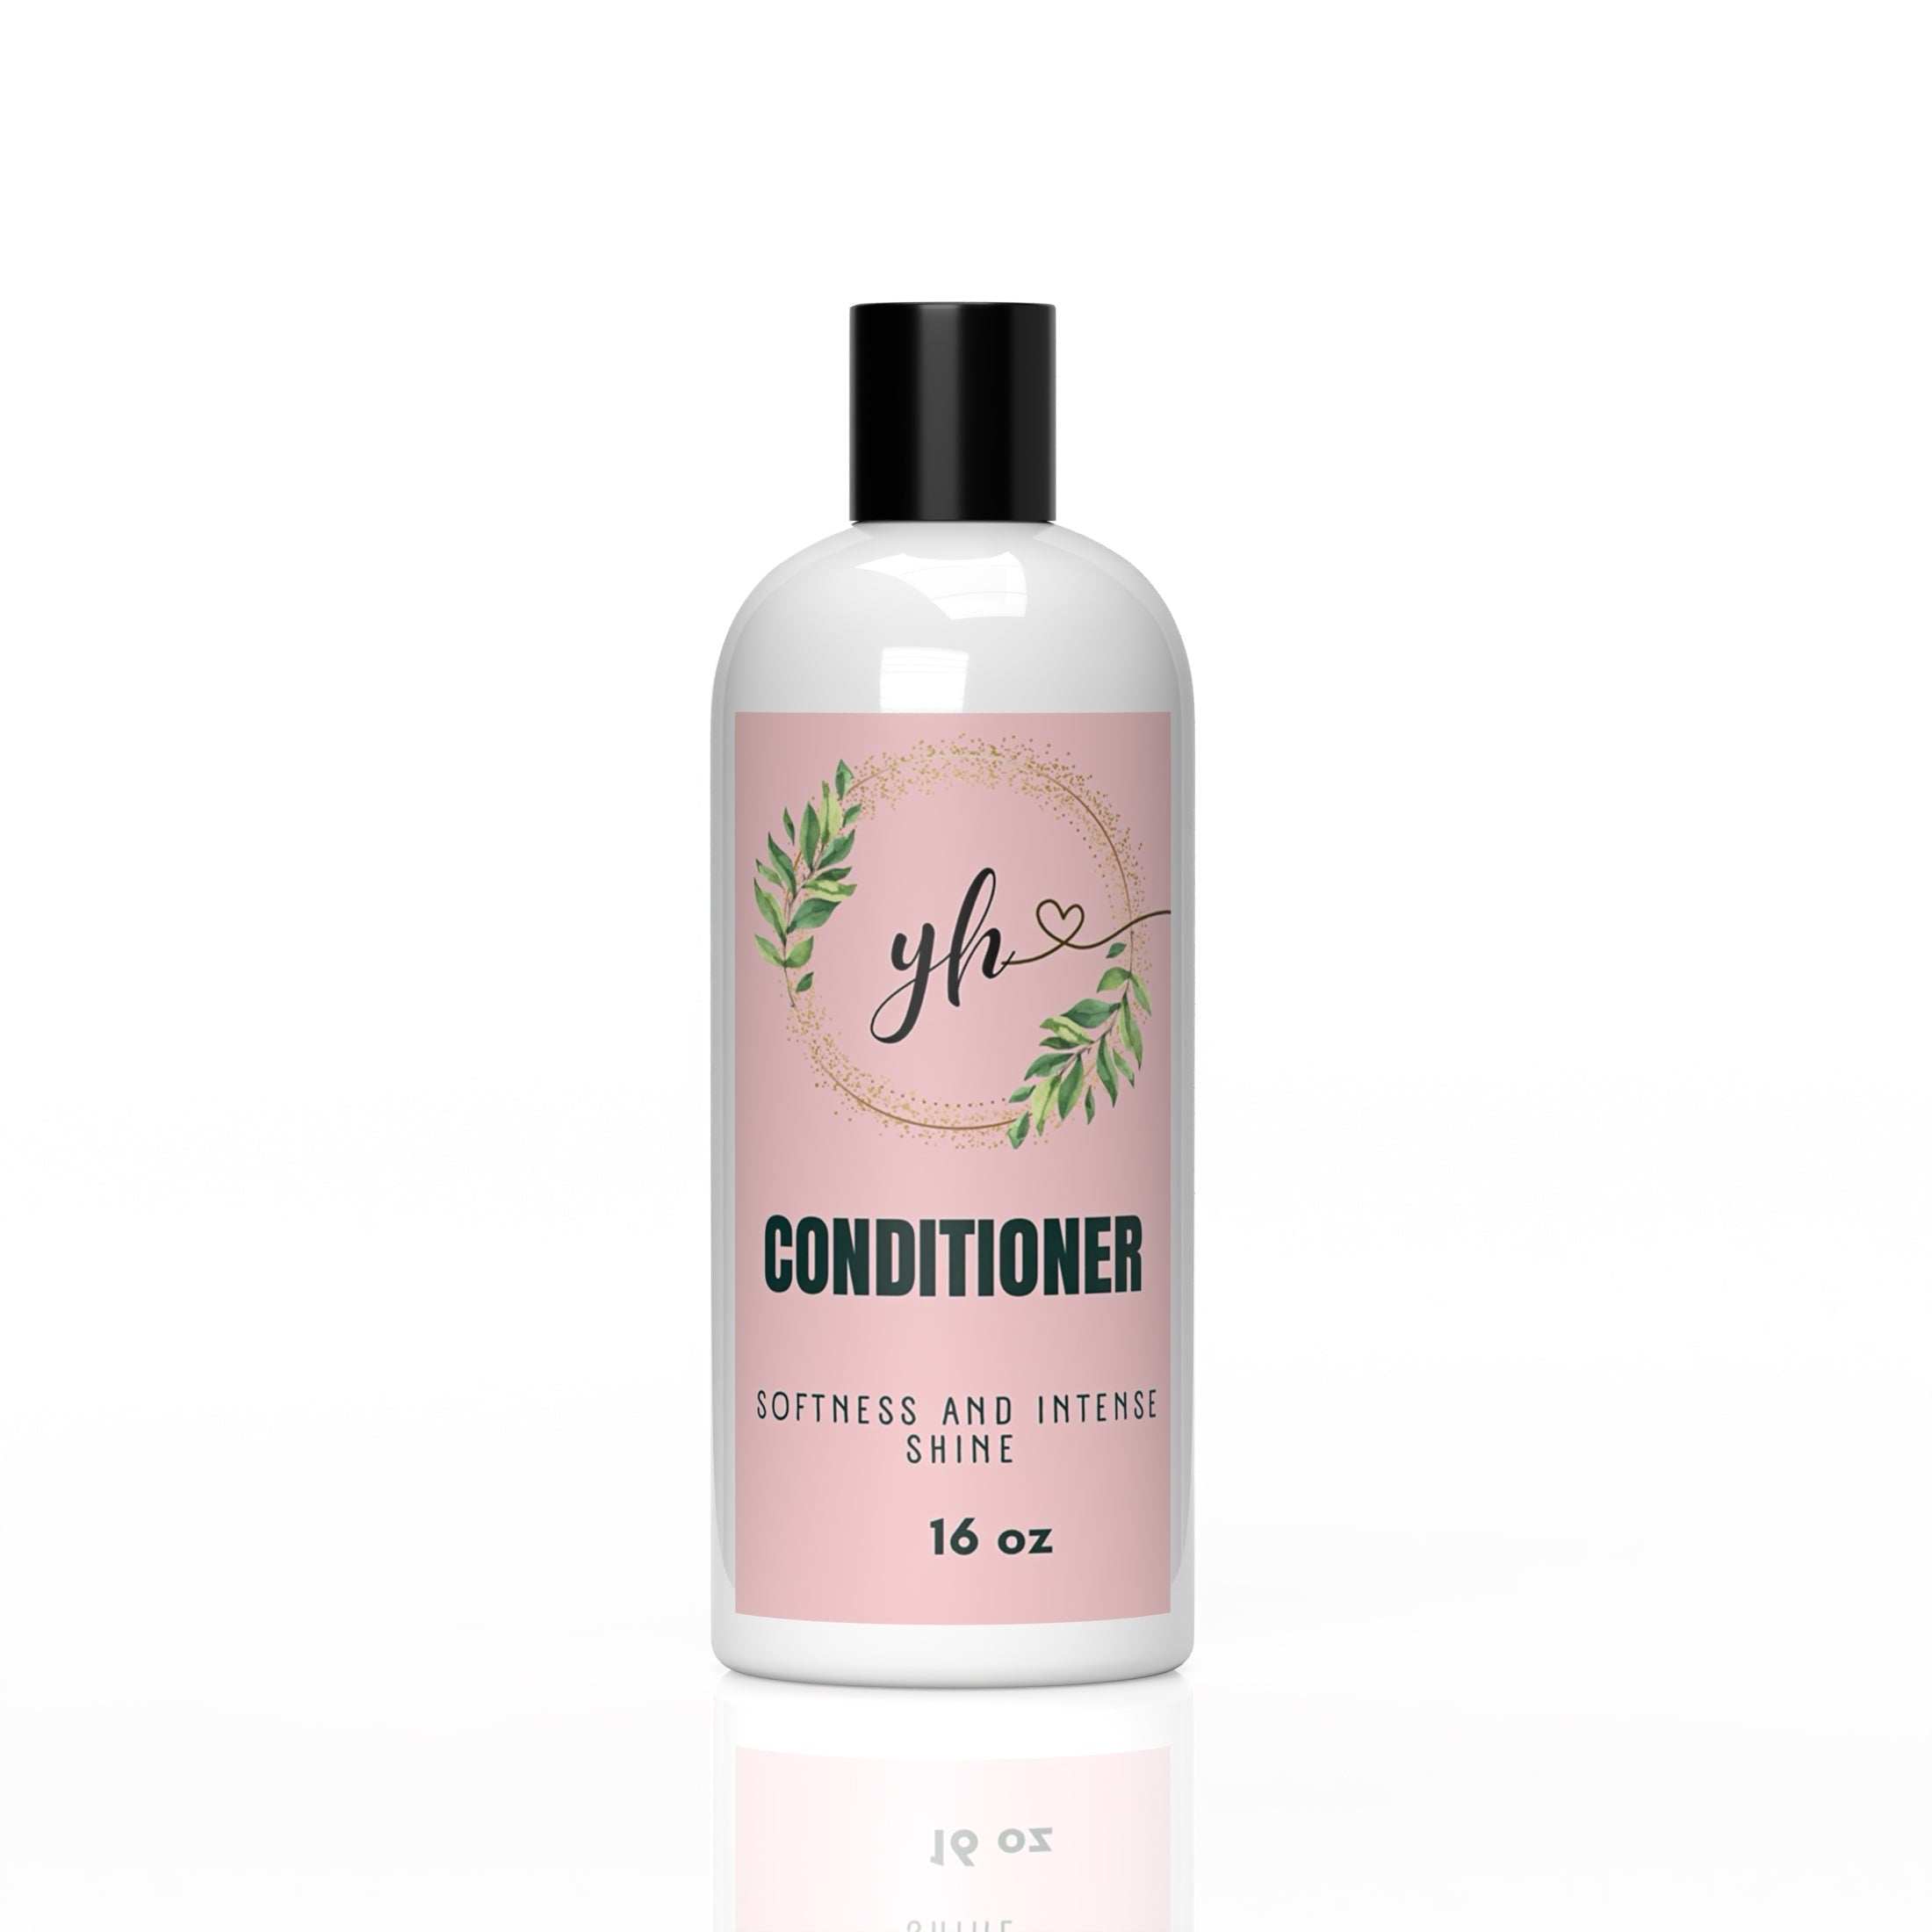 Shampoo softness and shine